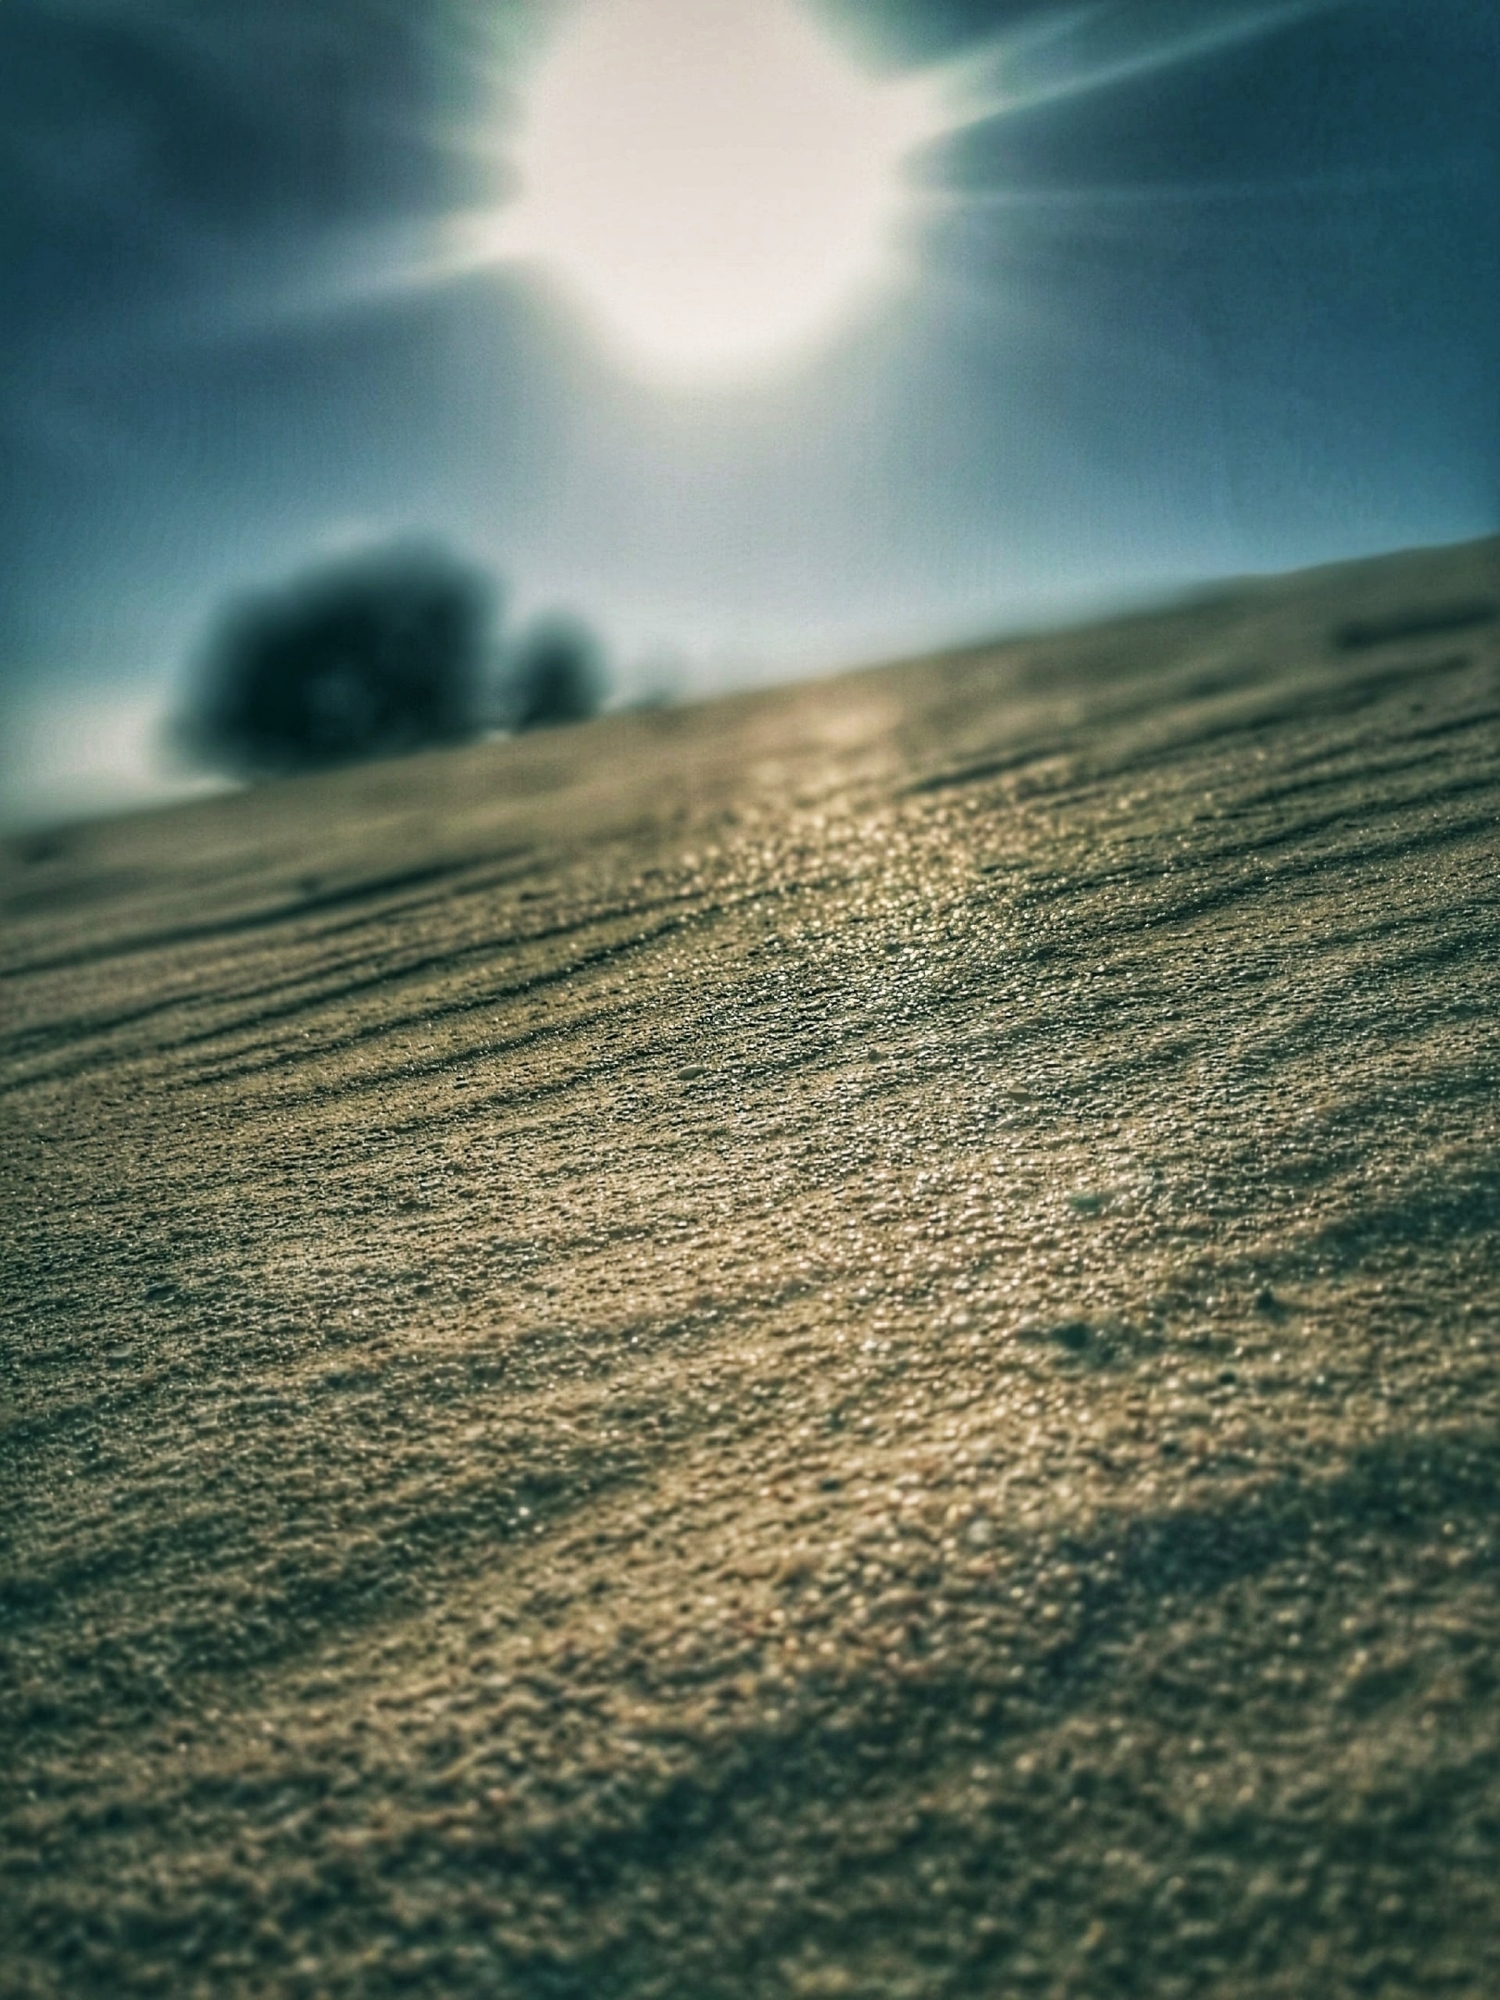 Жгучий песок